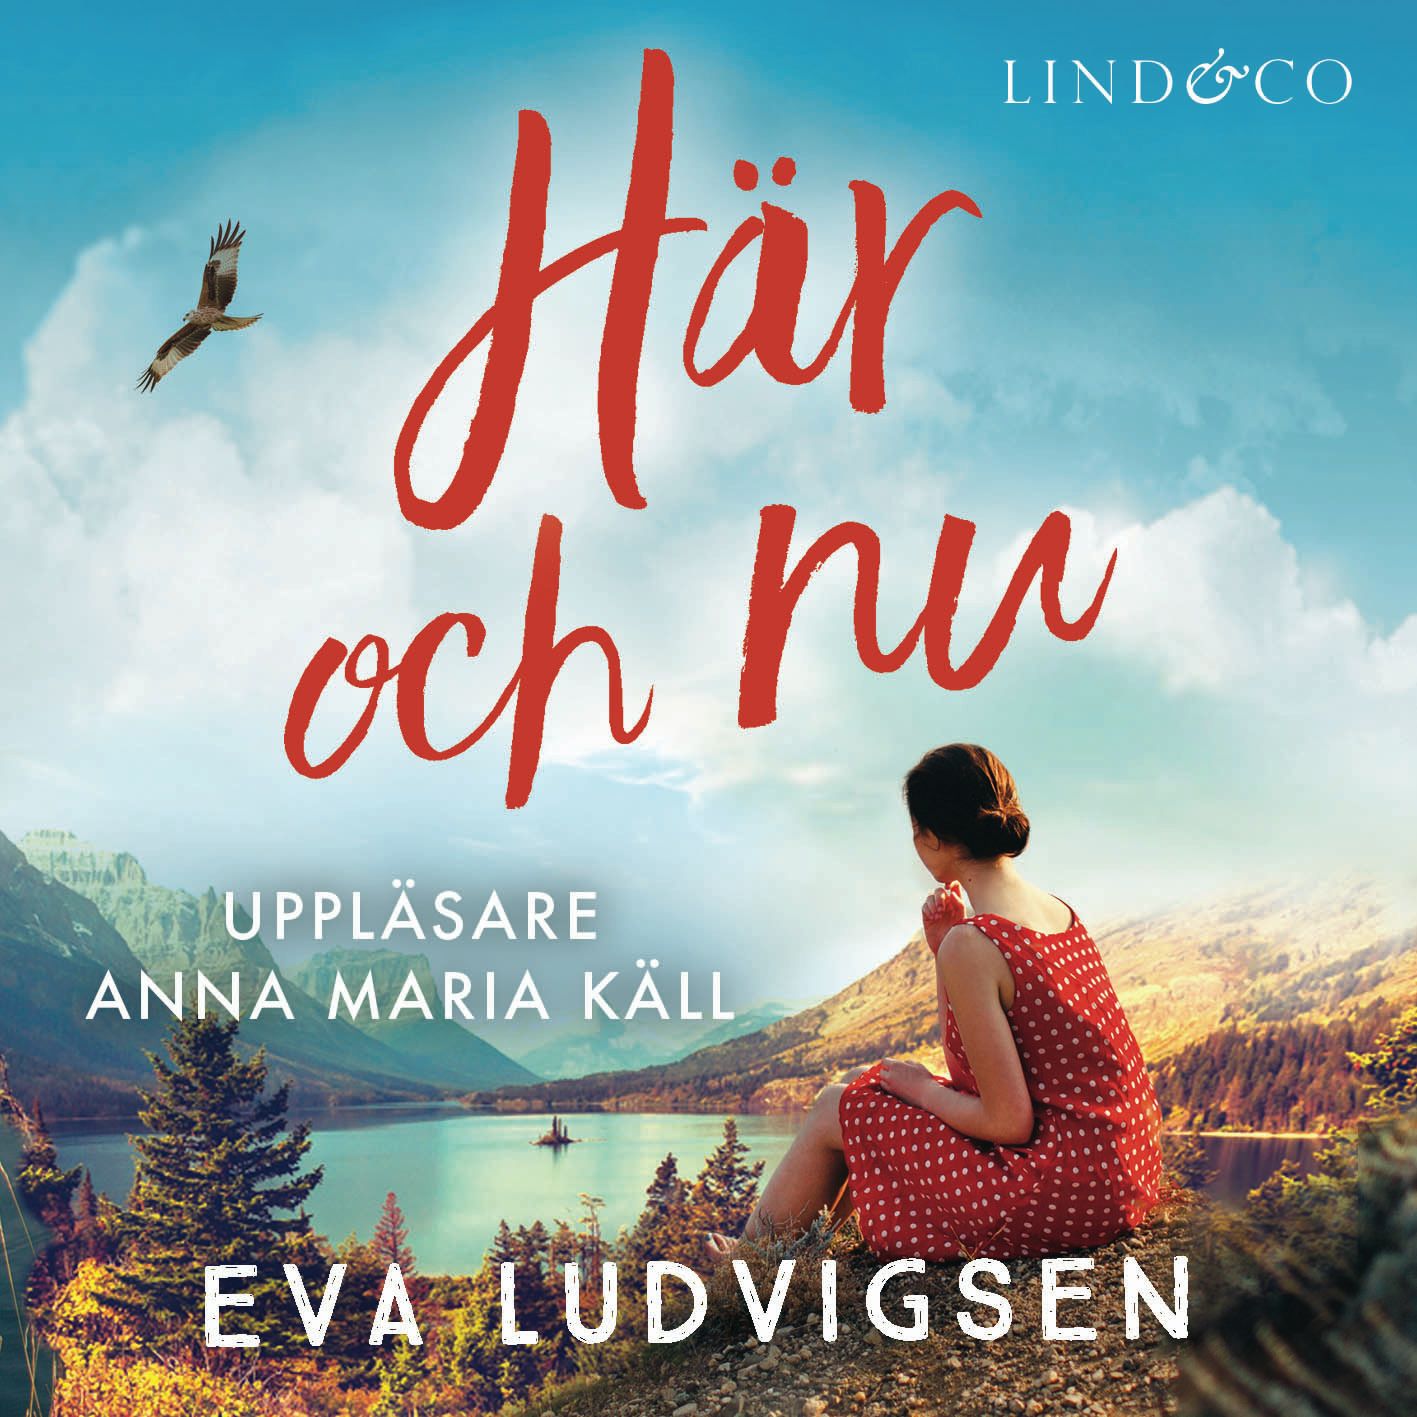 Här och nu, audiobook by Eva Ludvigsen